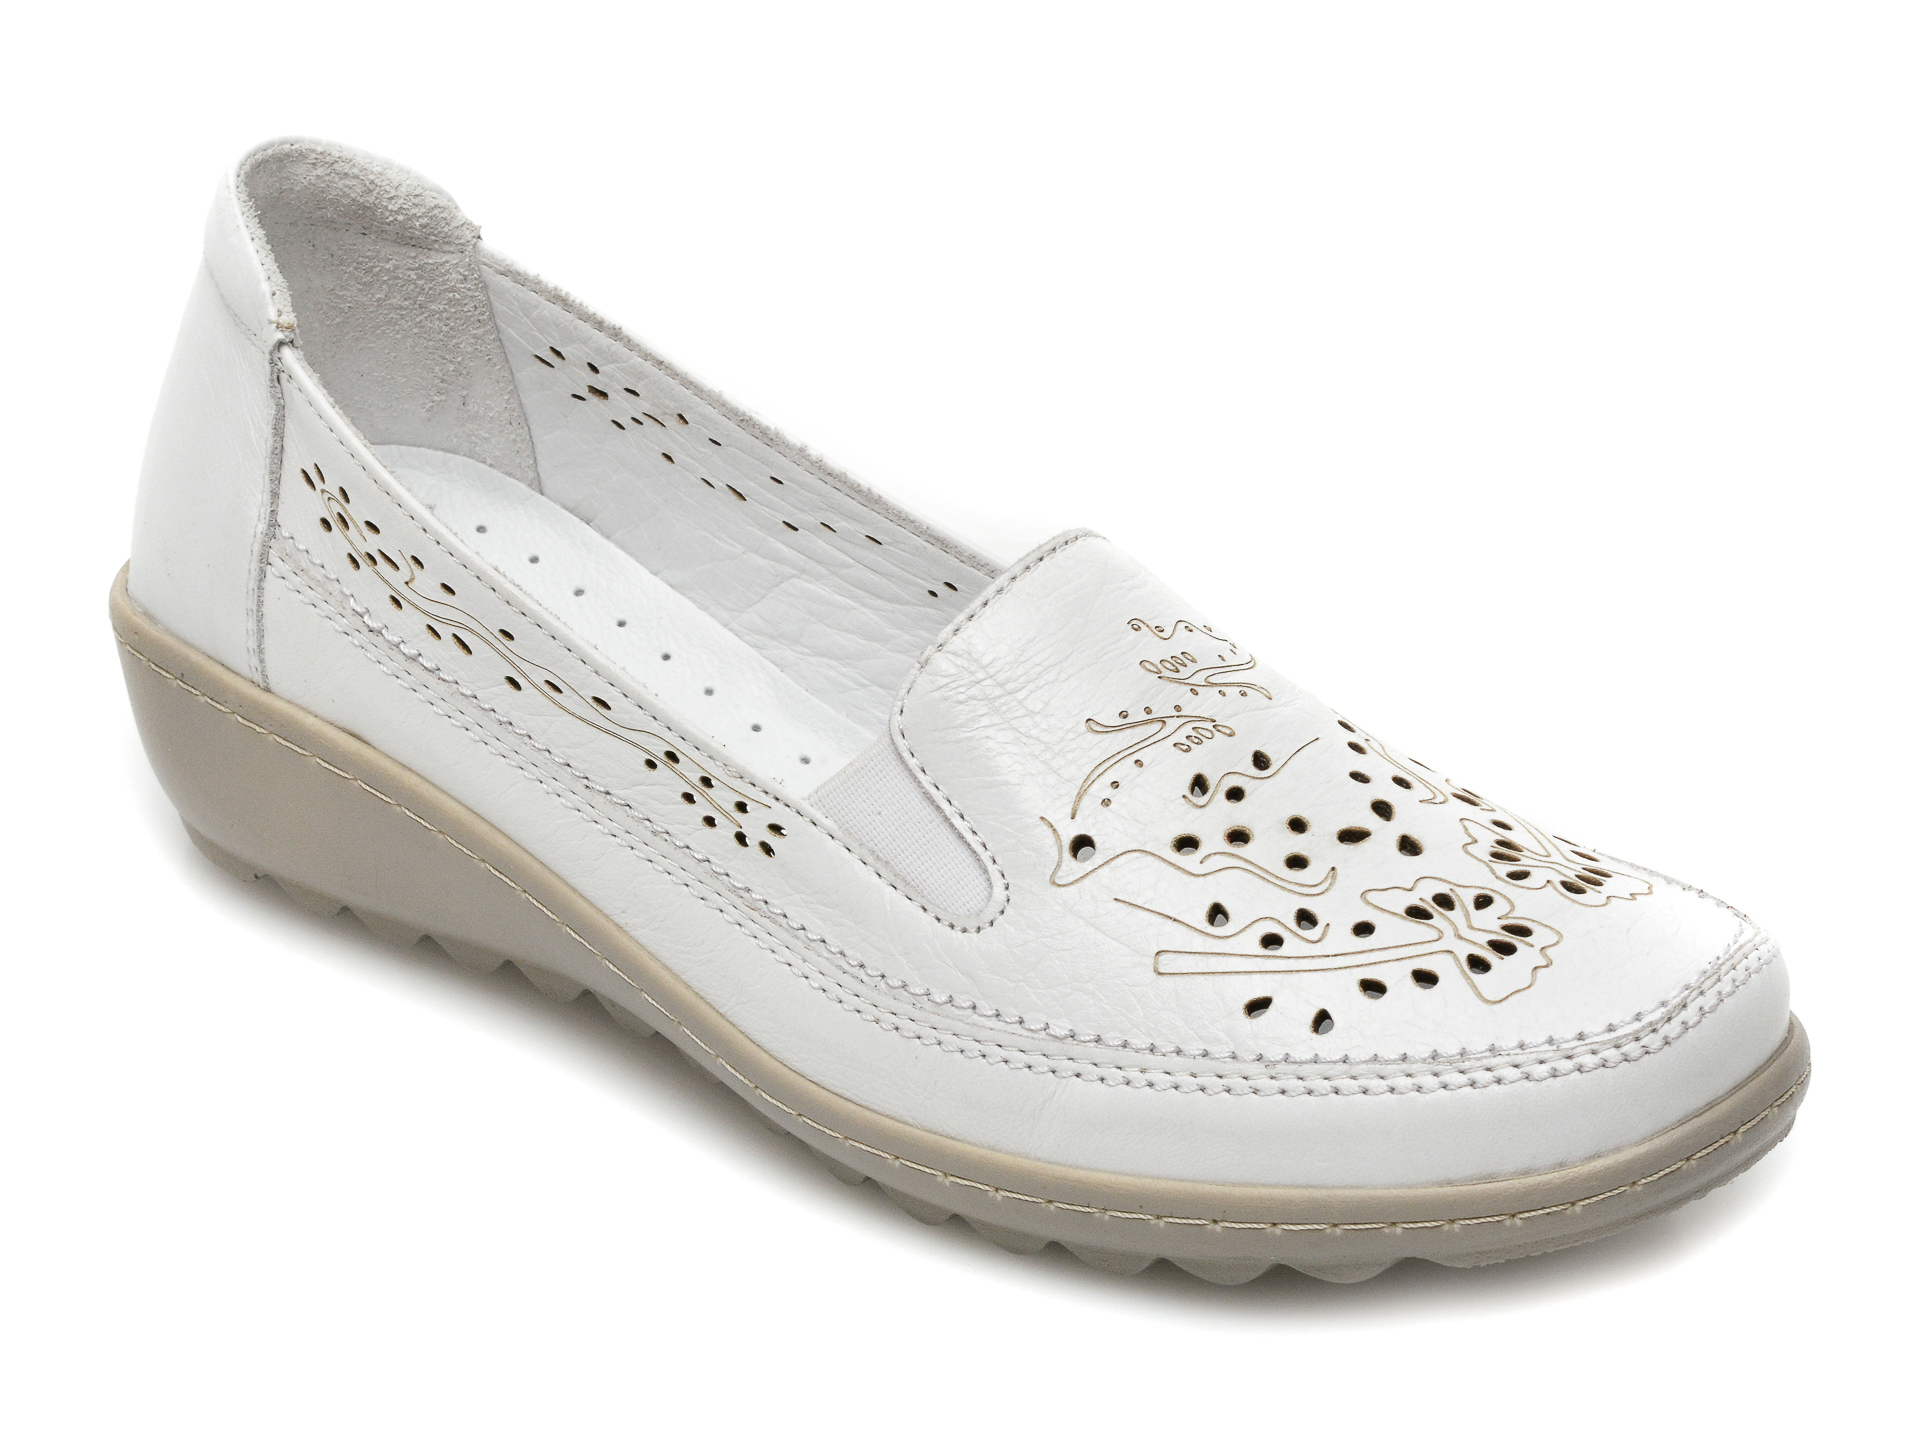 Pantofi PASS COLLECTION albi, 19715, din piele naturala imagine Black Friday 2021